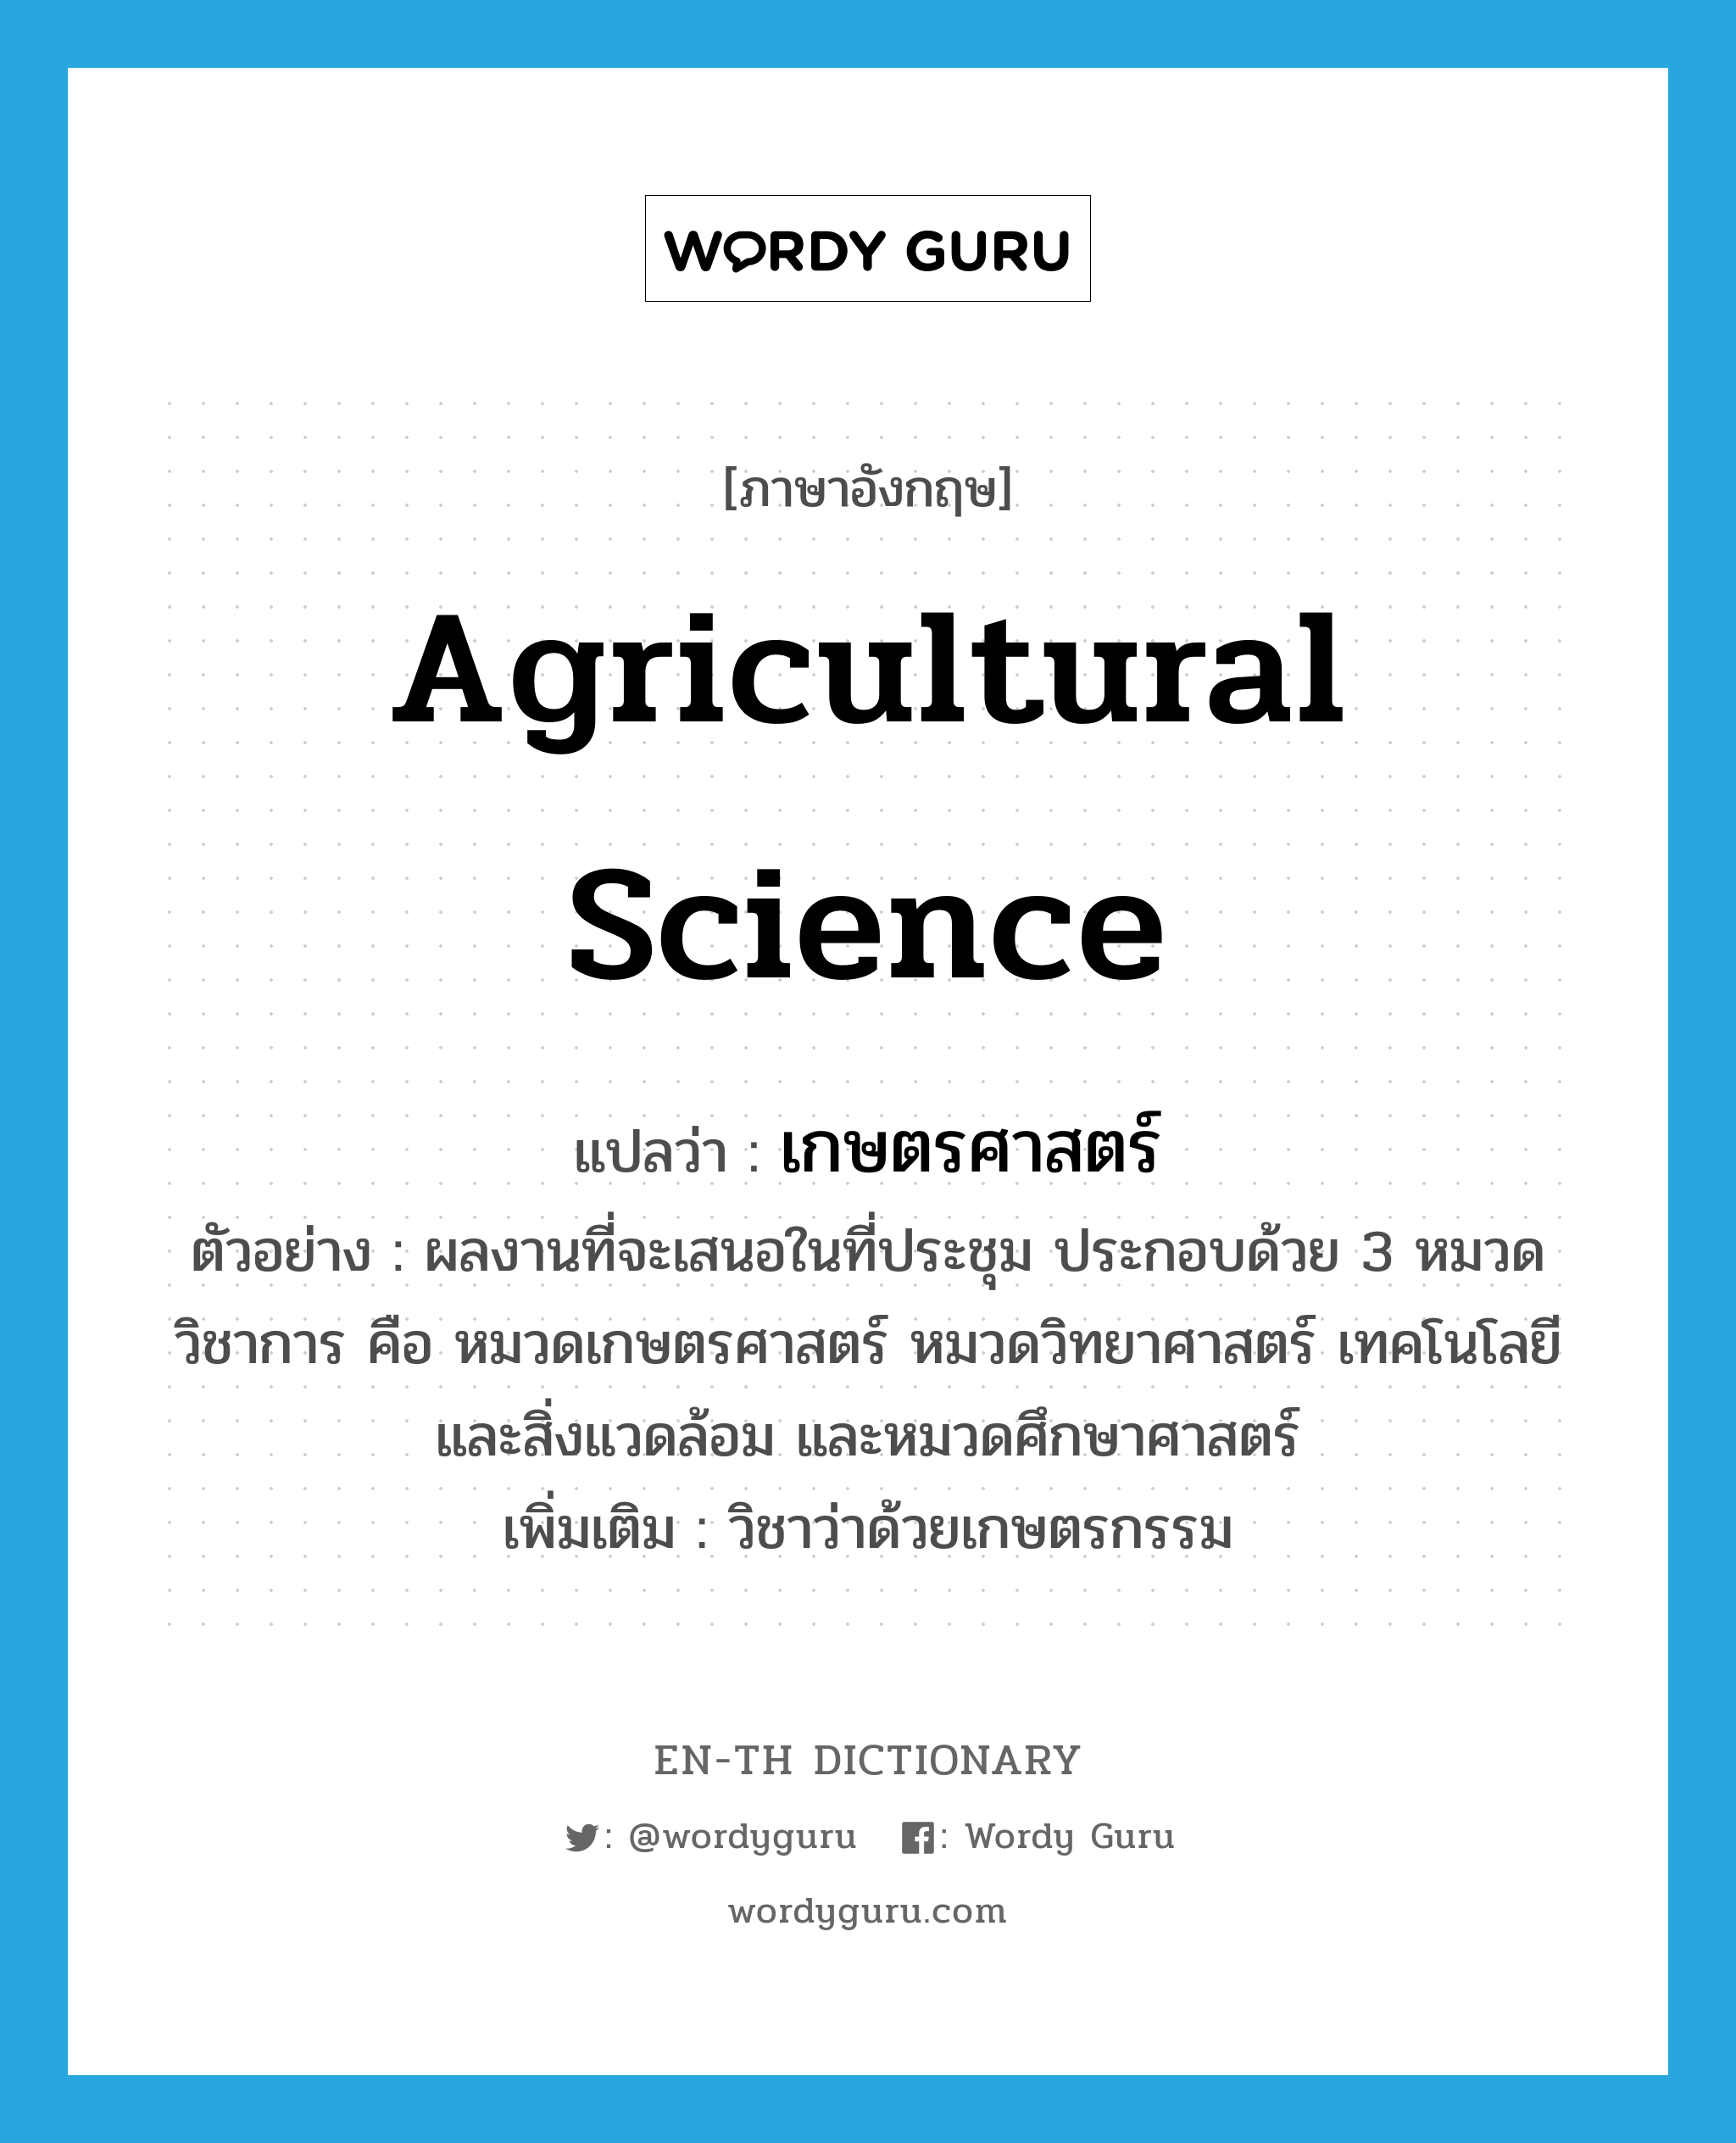 agricultural science แปลว่า?, คำศัพท์ภาษาอังกฤษ agricultural science แปลว่า เกษตรศาสตร์ ประเภท N ตัวอย่าง ผลงานที่จะเสนอในที่ประชุม ประกอบด้วย 3 หมวดวิชาการ คือ หมวดเกษตรศาสตร์ หมวดวิทยาศาสตร์ เทคโนโลยีและสิ่งแวดล้อม และหมวดศึกษาศาสตร์ เพิ่มเติม วิชาว่าด้วยเกษตรกรรม หมวด N